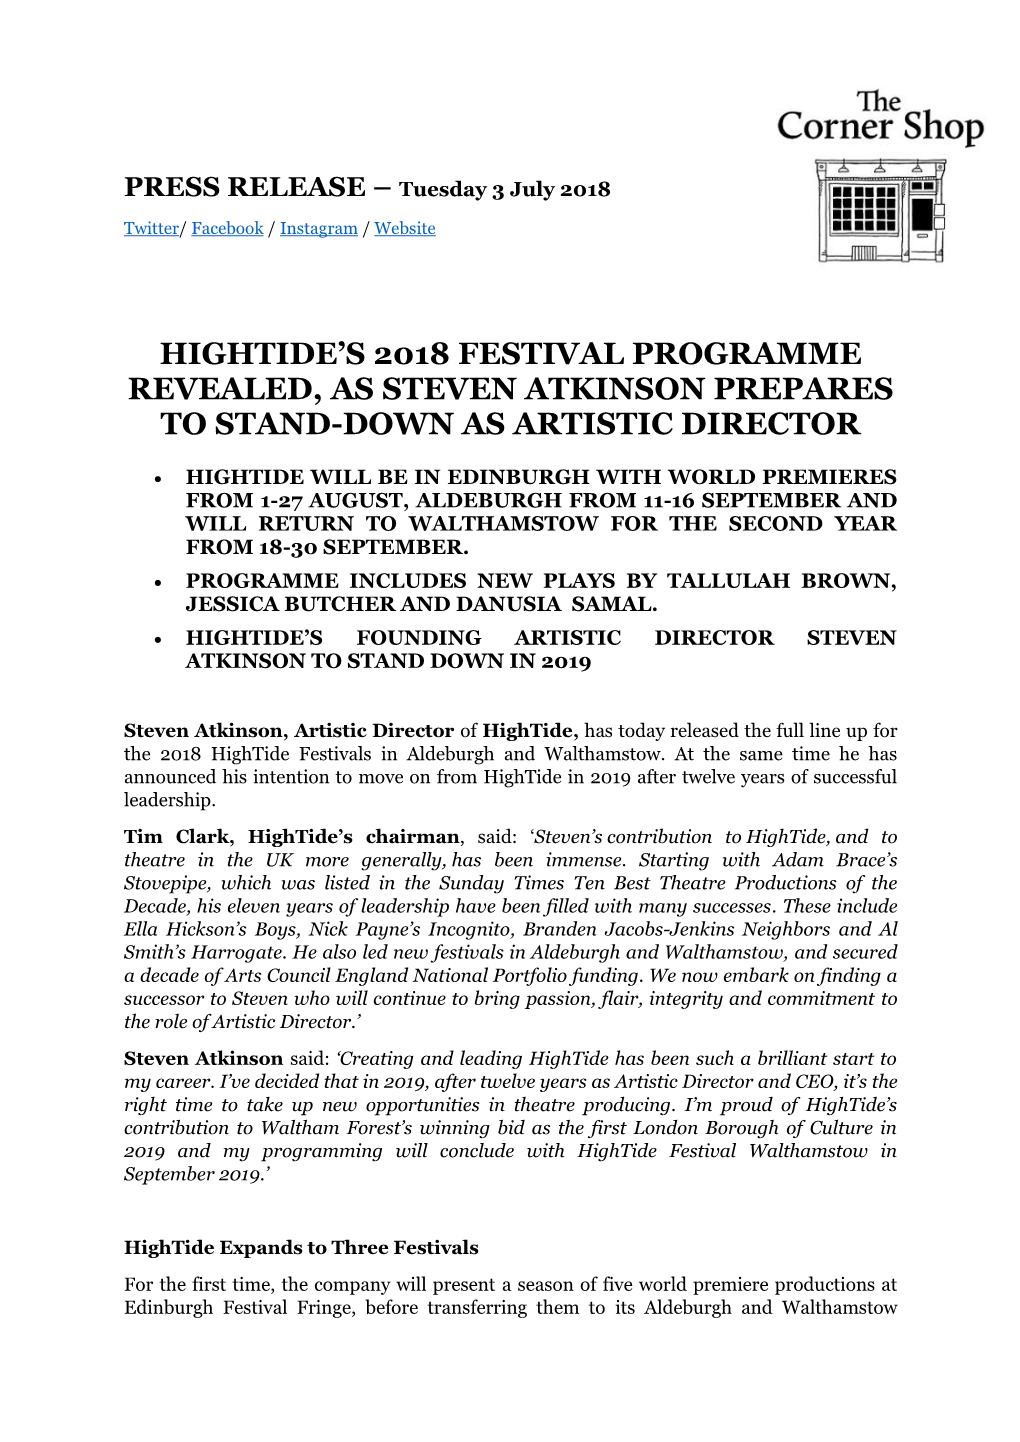 Hightide's 2018 Festival Programme Revealed, As